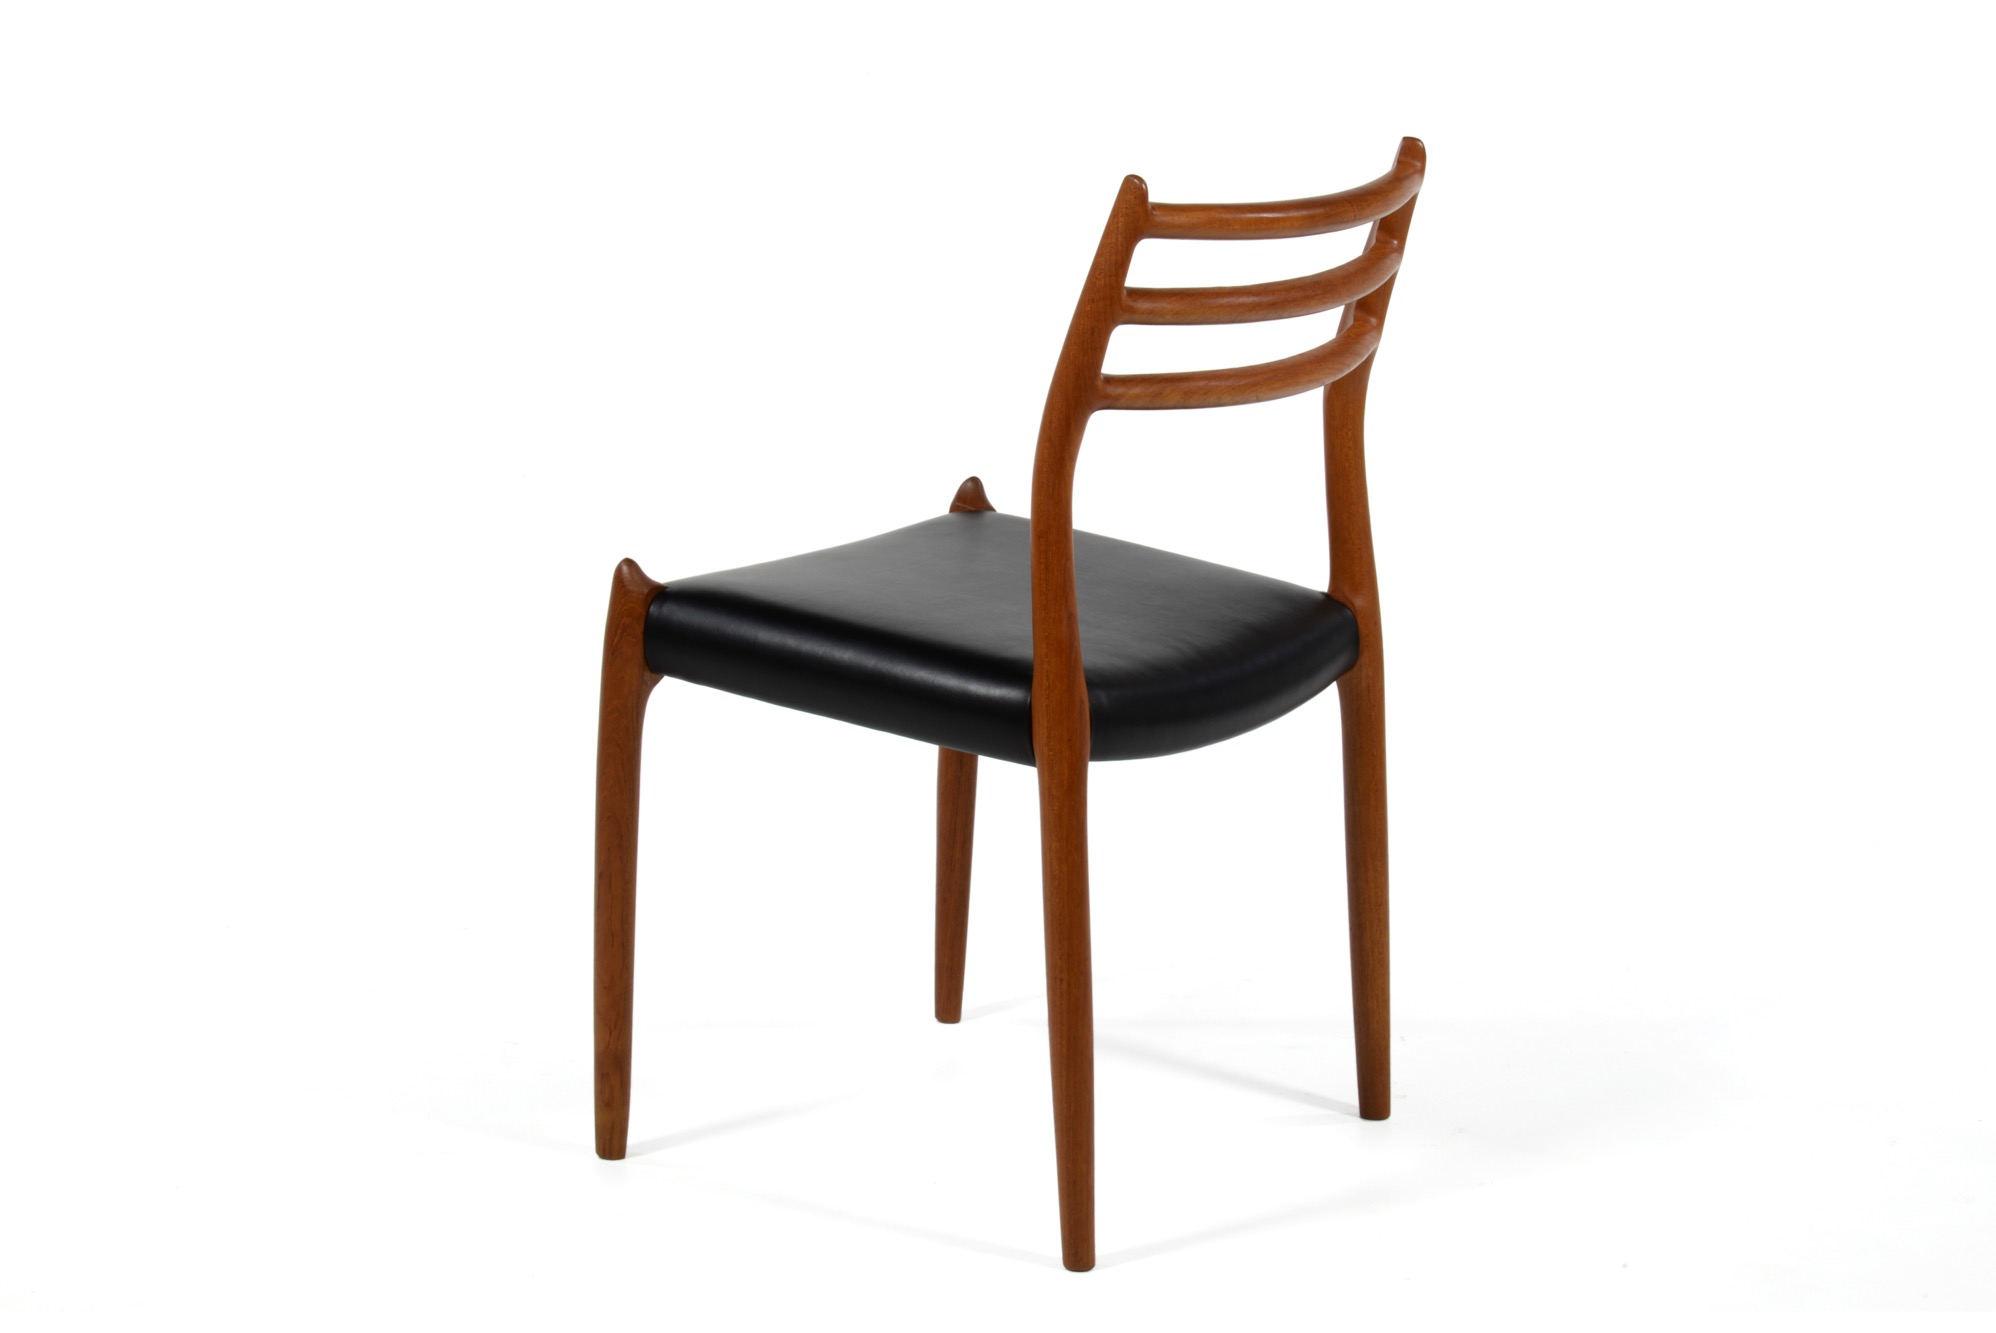 N.O. Møller / J.L. Møller “Model 78” Dining chair in Teak｜Luca 